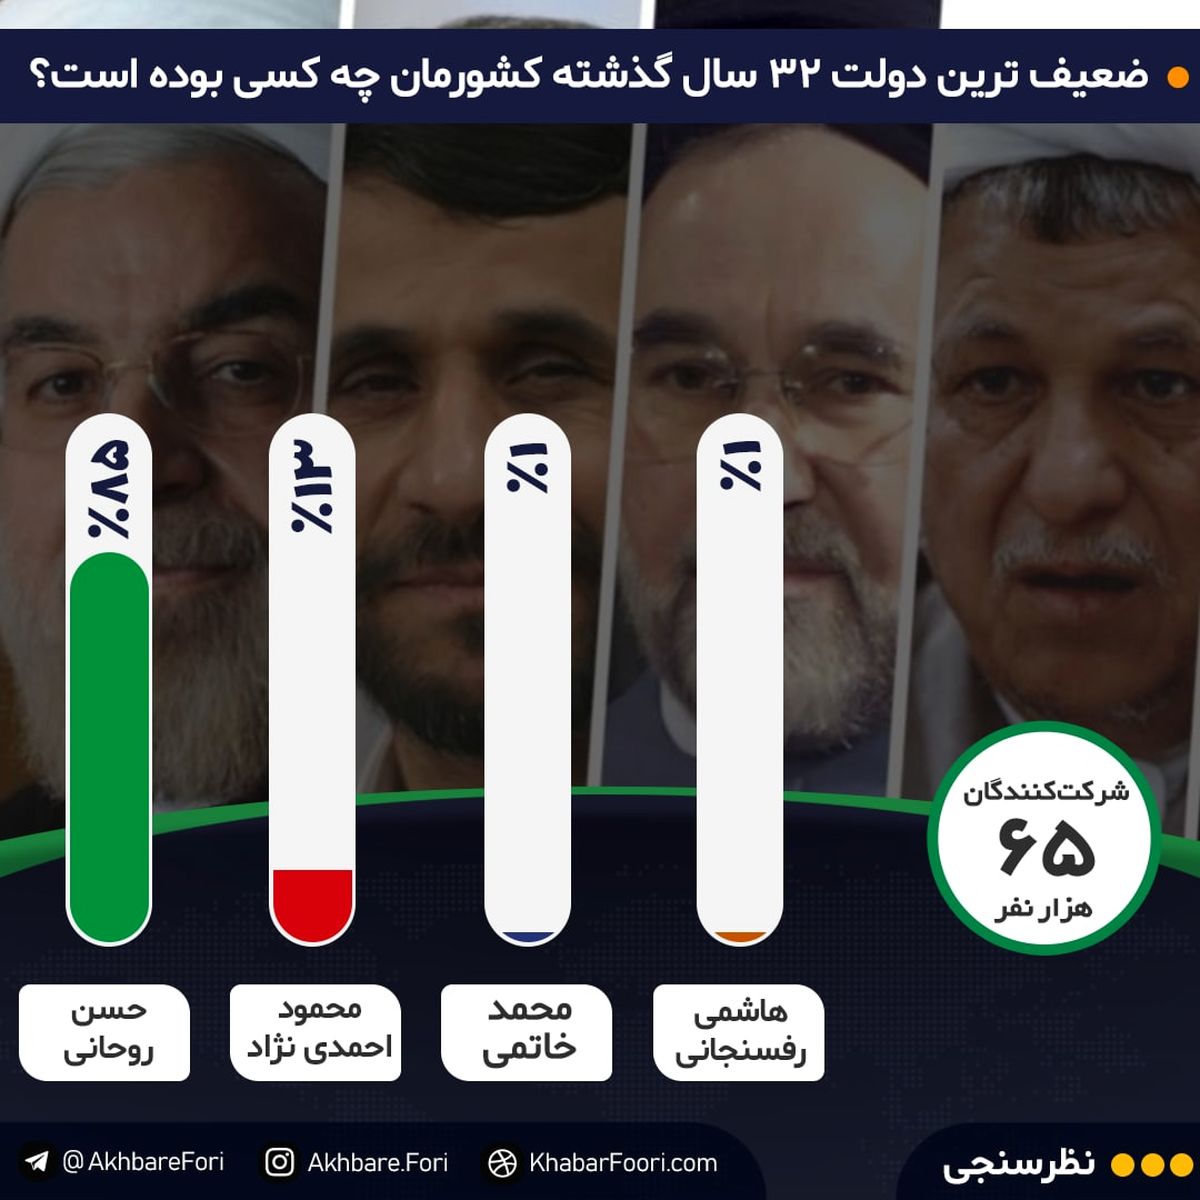 ضعیف‌ترین دولت سه دهه اخیر کدام است؟ / ۸۵درصد مخاطبان خبرفوری می‌گویند: دولت روحانی!